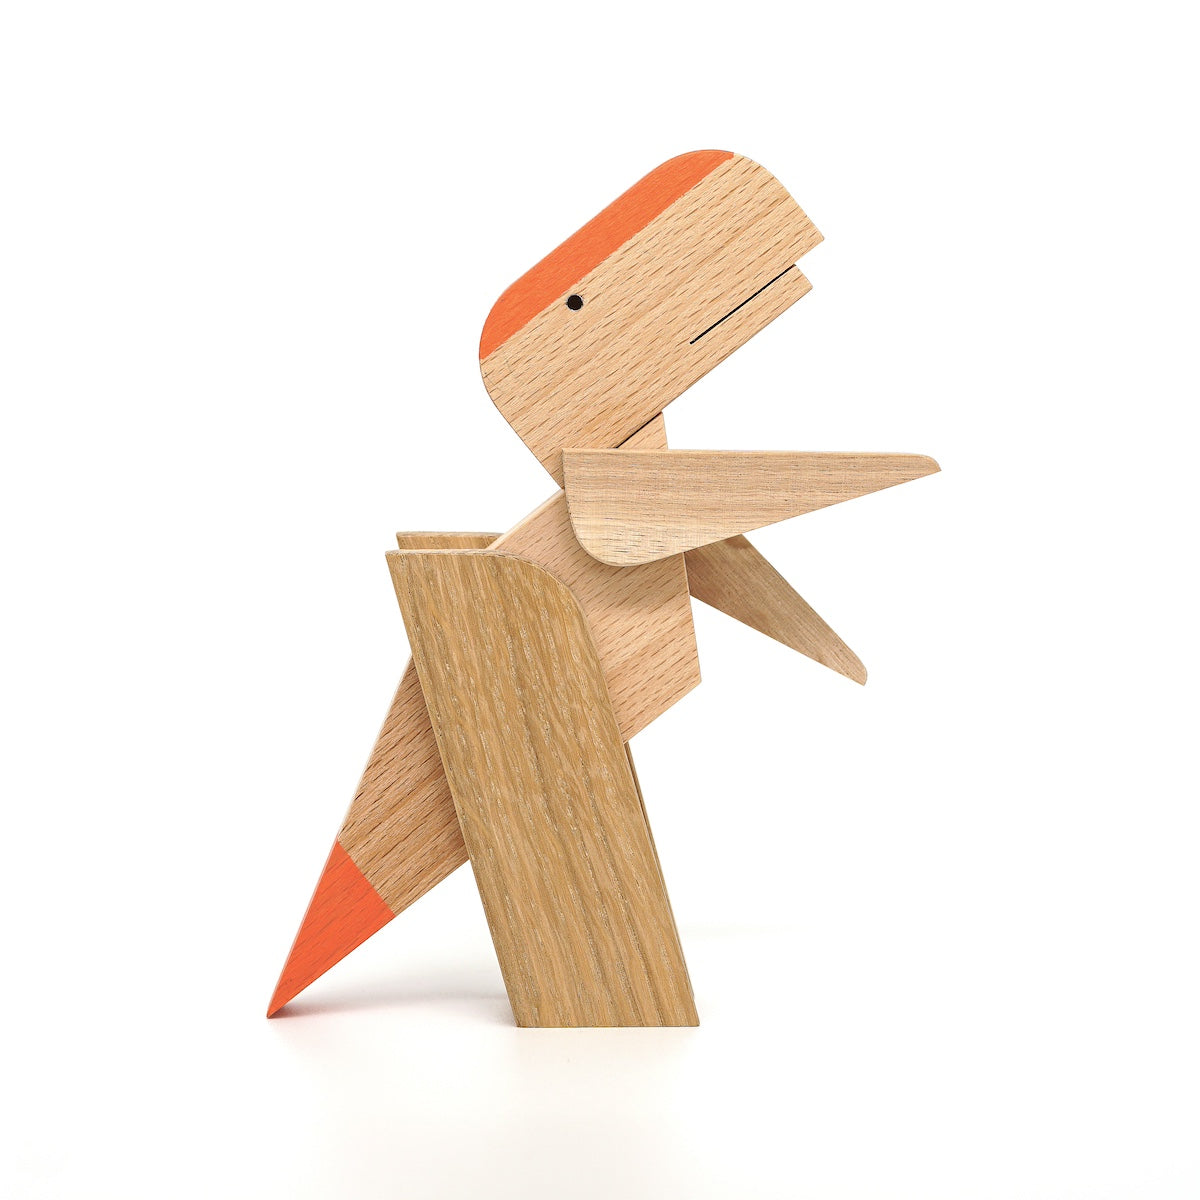 t.rex-Tyrannosaurus-wooden-toy